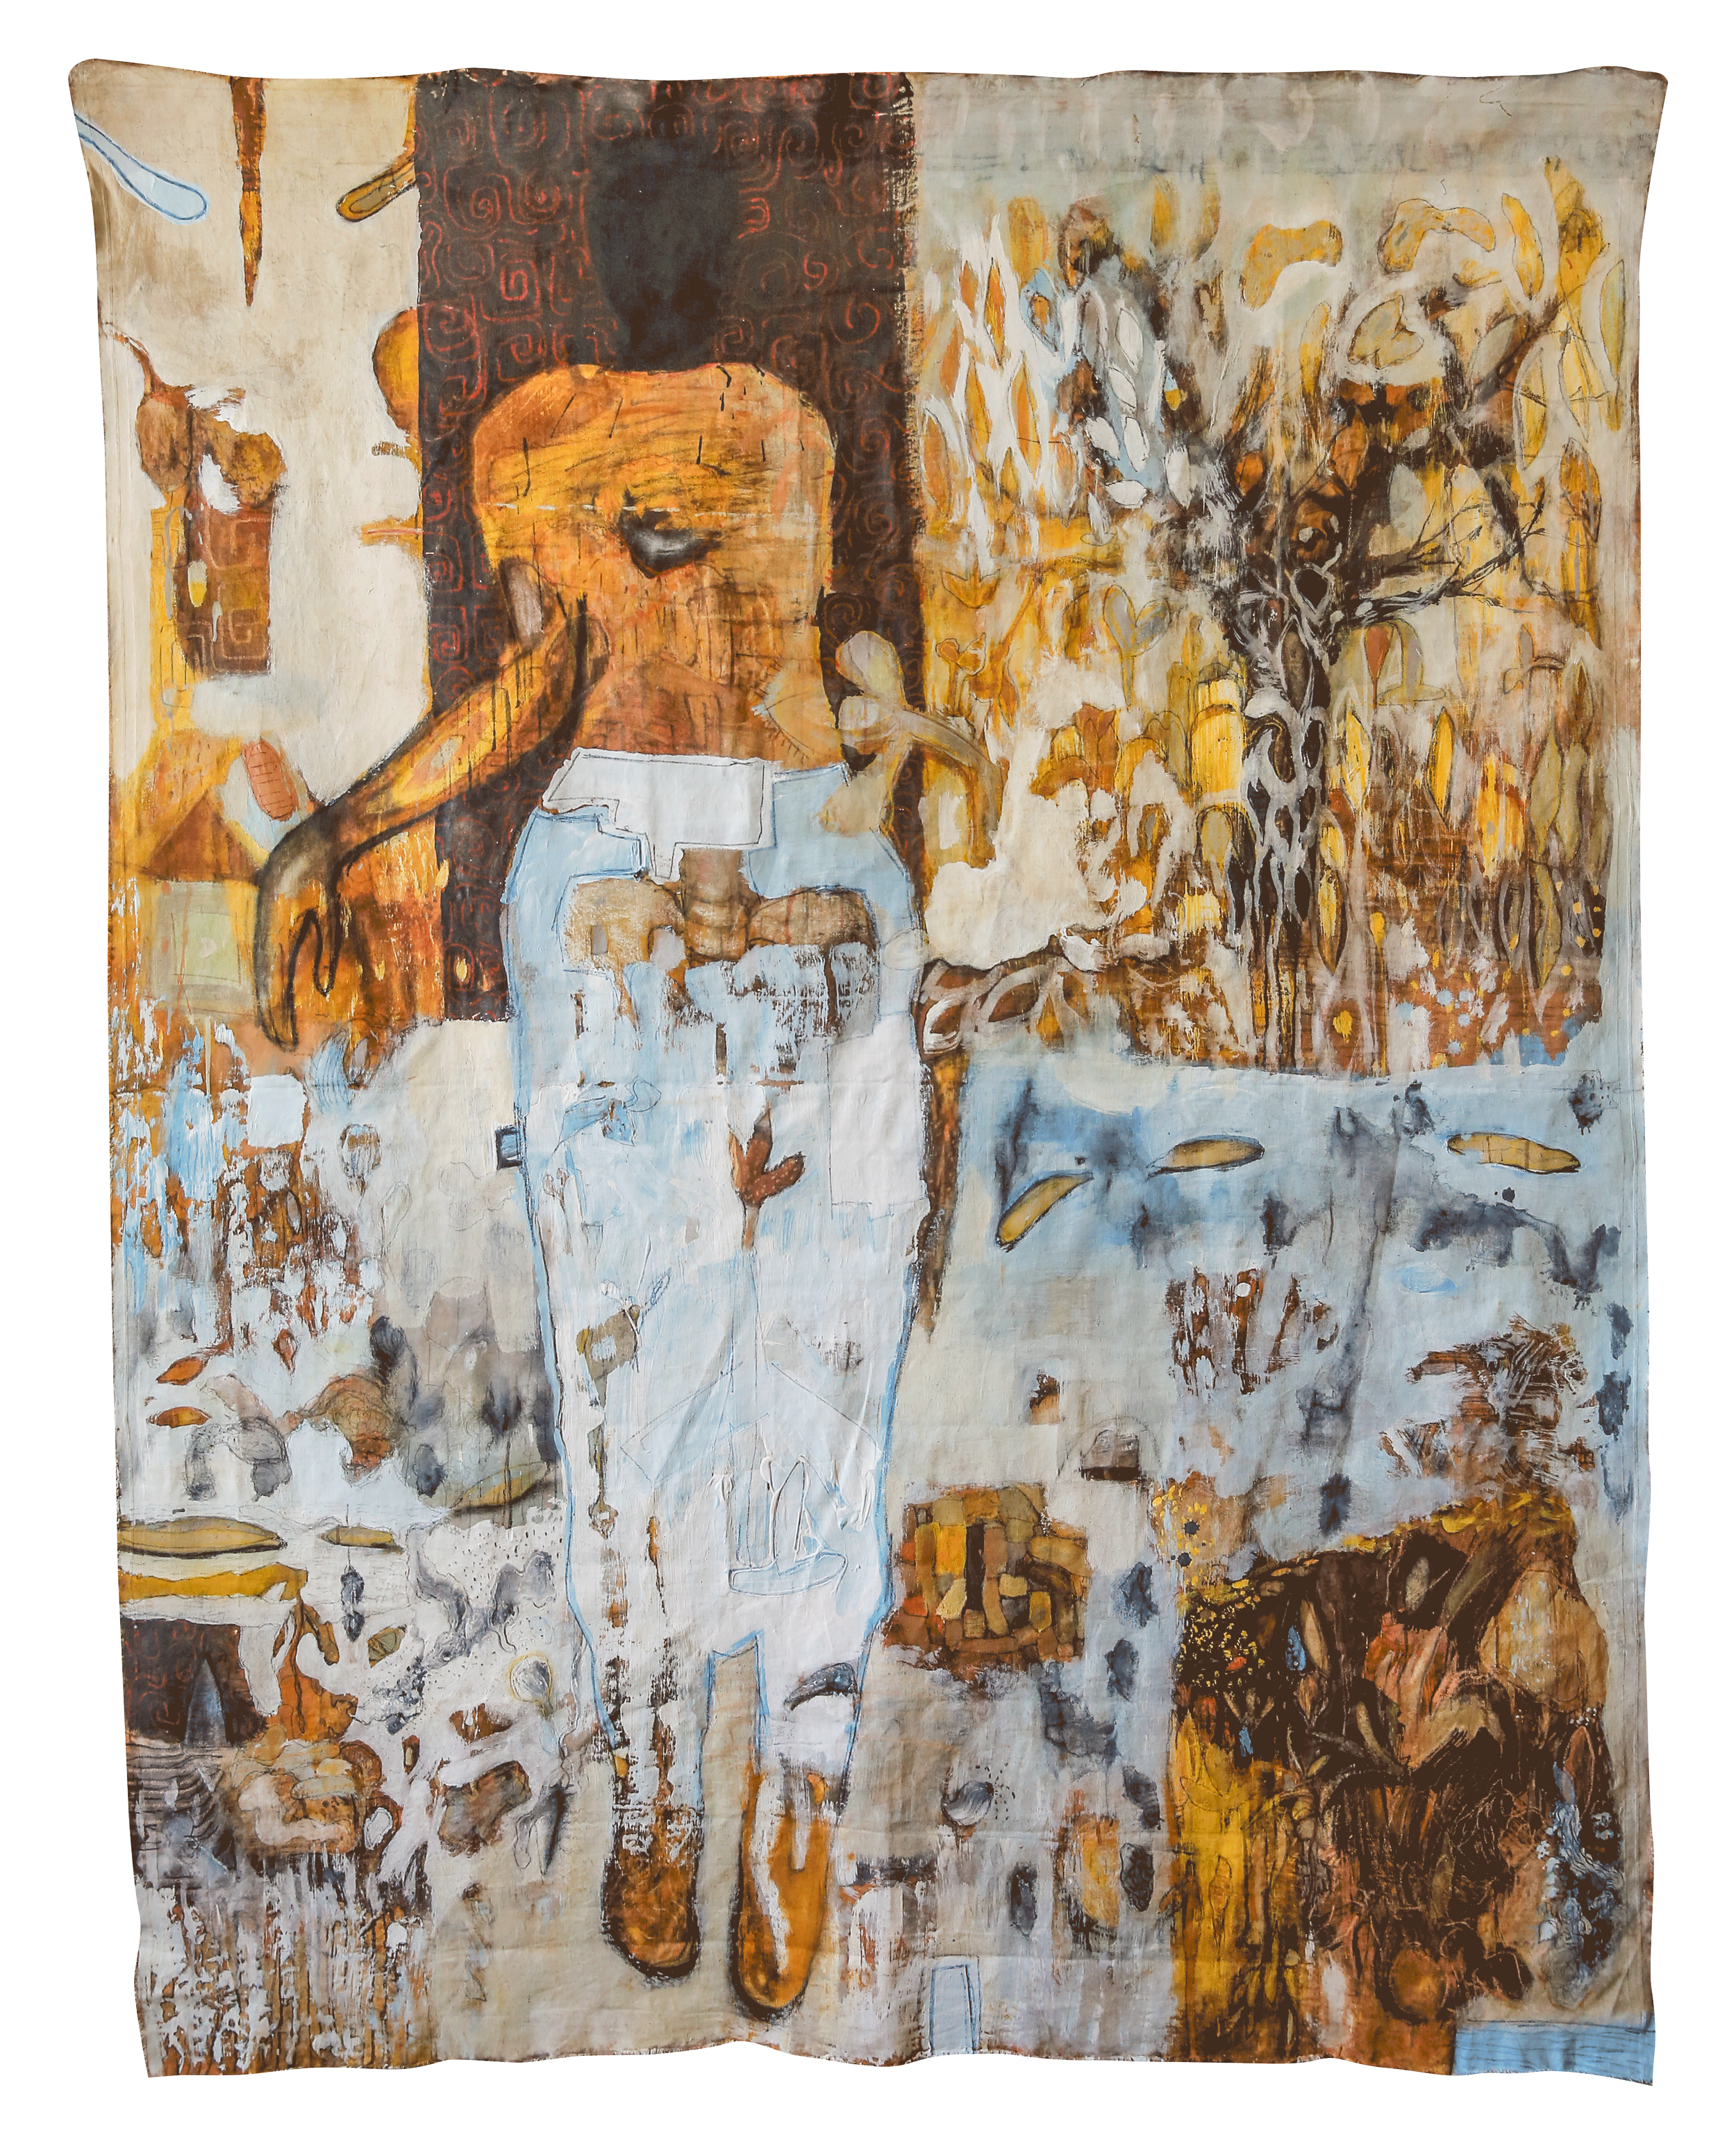 Musoo (femme), 2022, Acrylique, pigments naturels, encre, graphite sur toile 207 x 163 cm